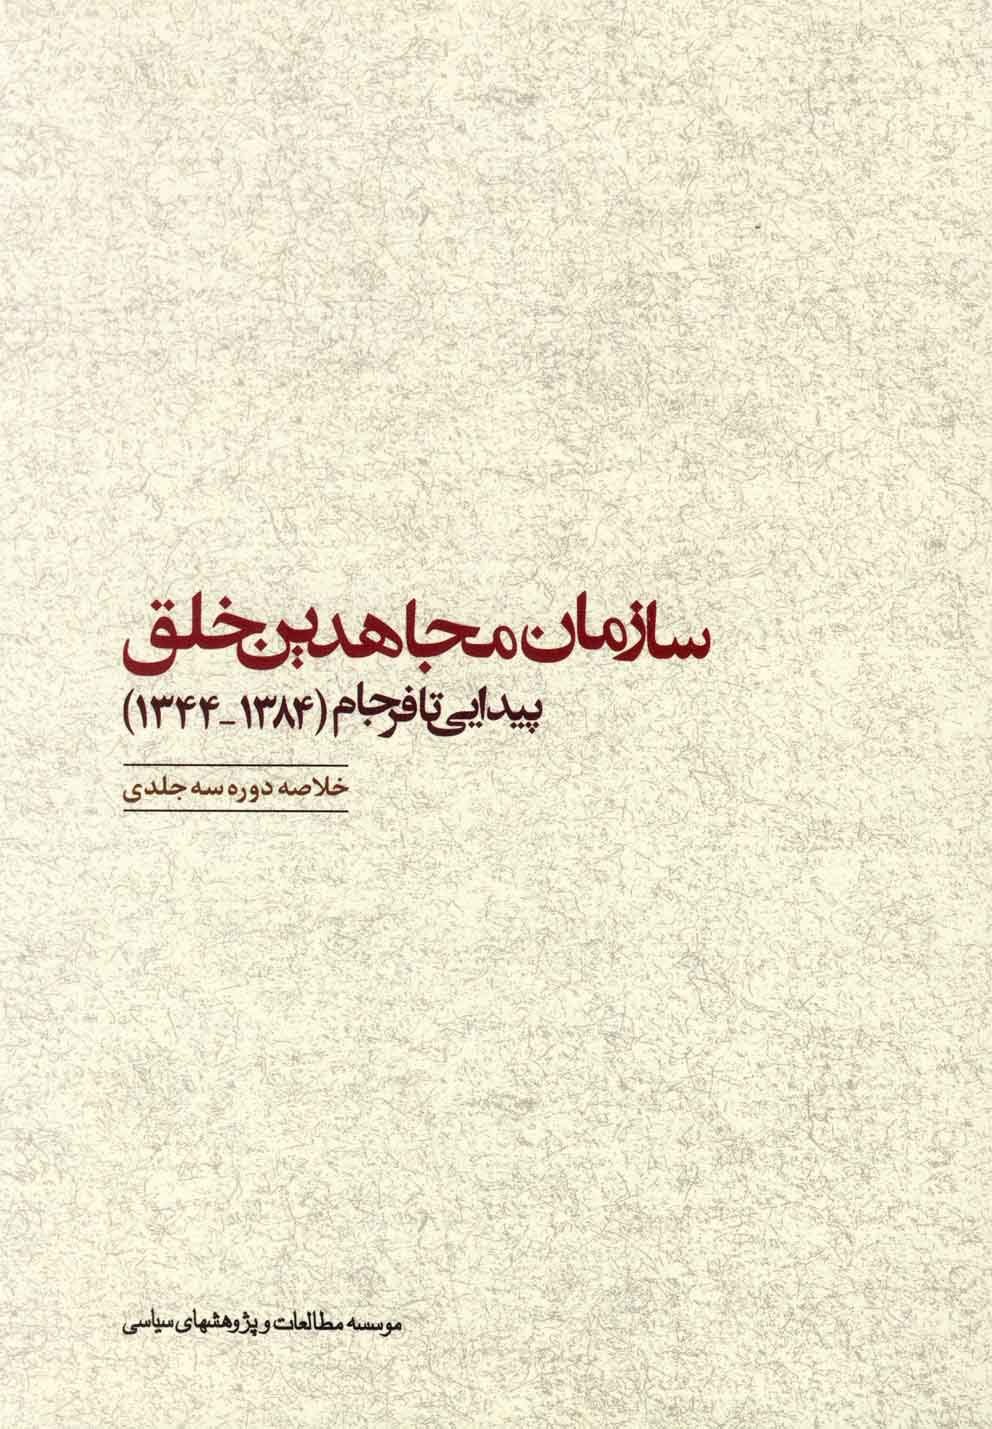 سازمان مجاهدین خلق: پیدایی تا فرجام (1384_1344): گزیده سه جلد